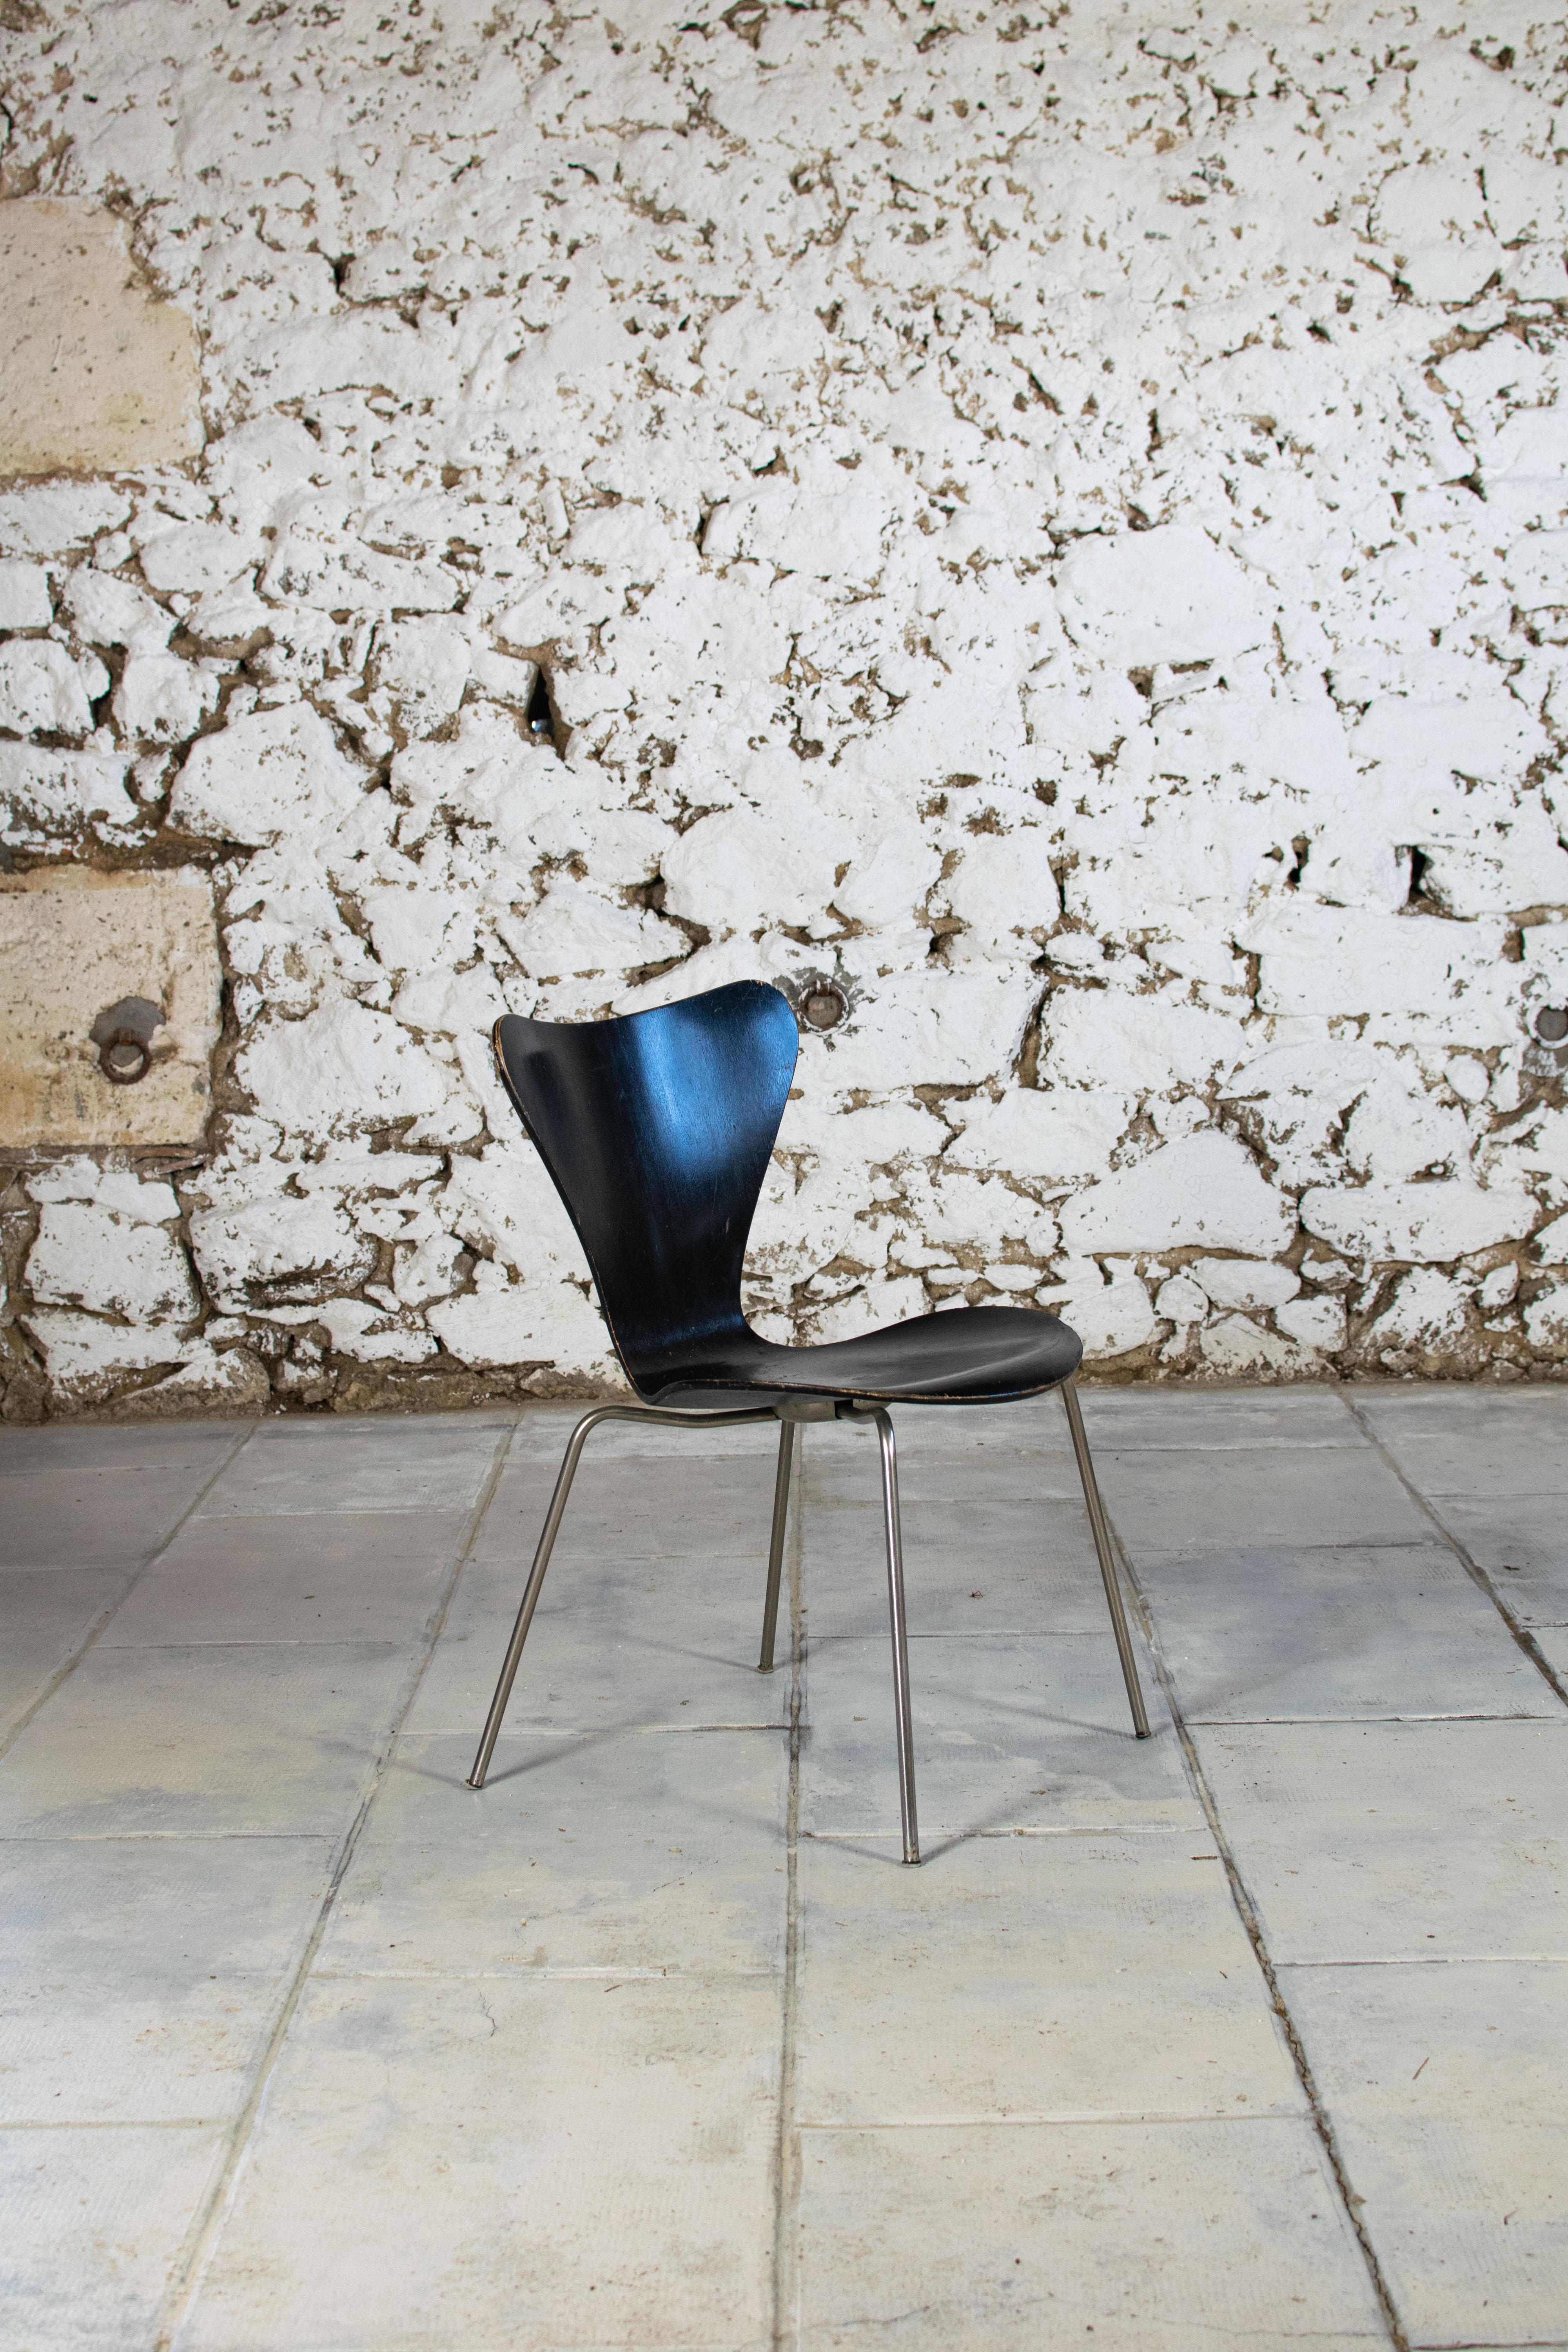 Grand classique du design la chaise Série 7 dessinée en 1955 par le designer danois Arne Jacobsen, est le bestseller de Fritz Hansen depuis des décennie. Ce modèle est l’aboutissement des recherches de Jacobsen sur les possibilité du bois courbé,